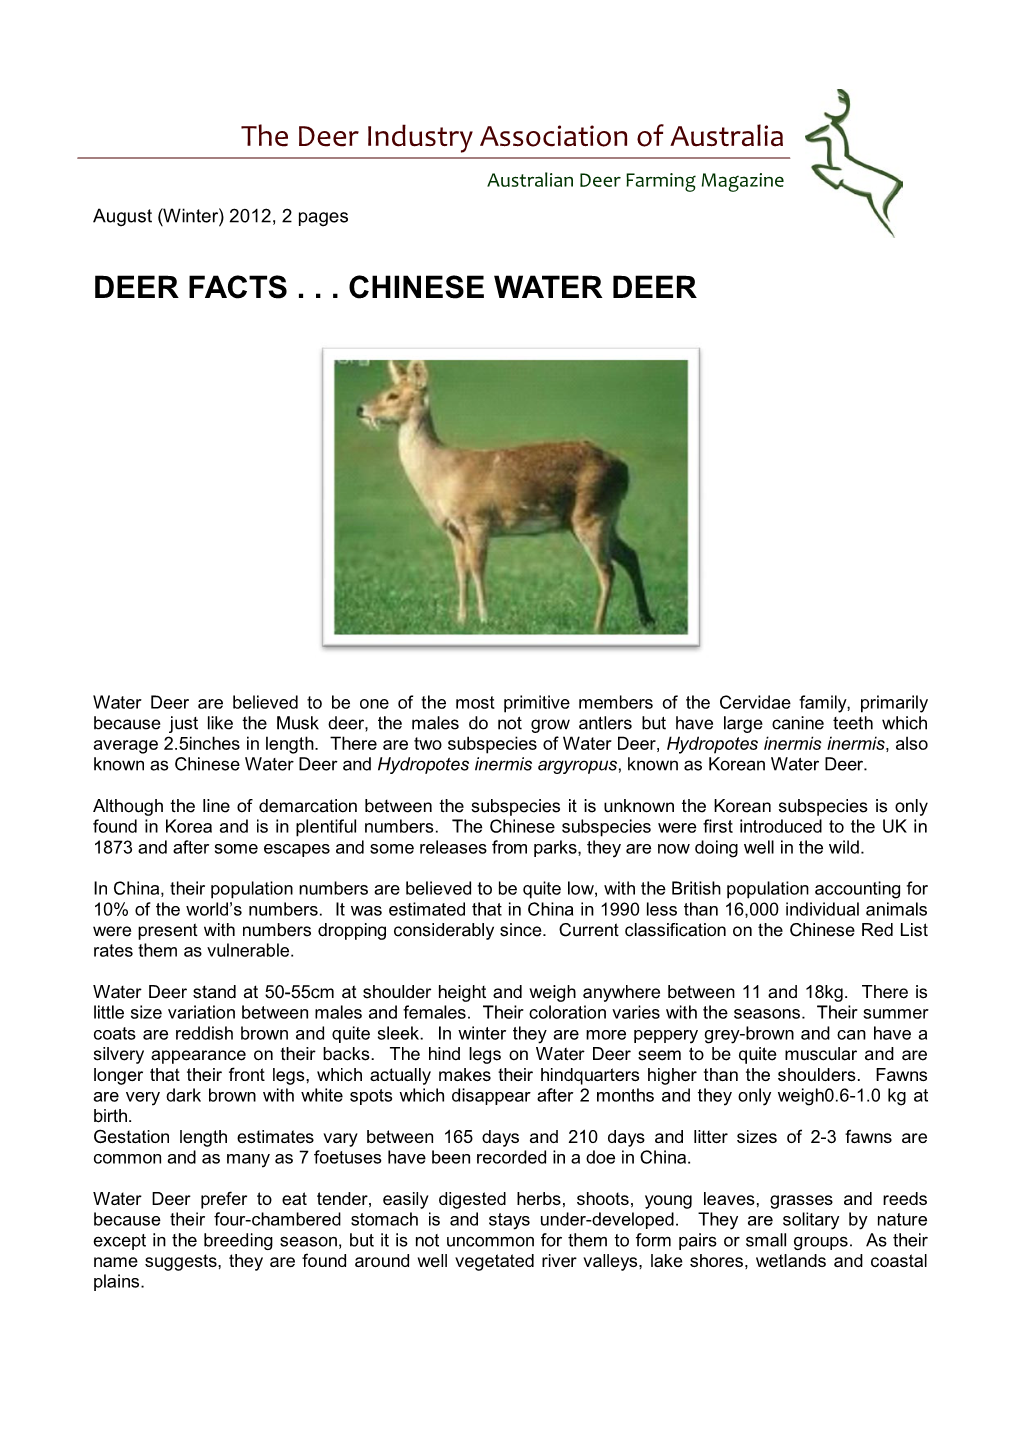 Chinese Water Deer